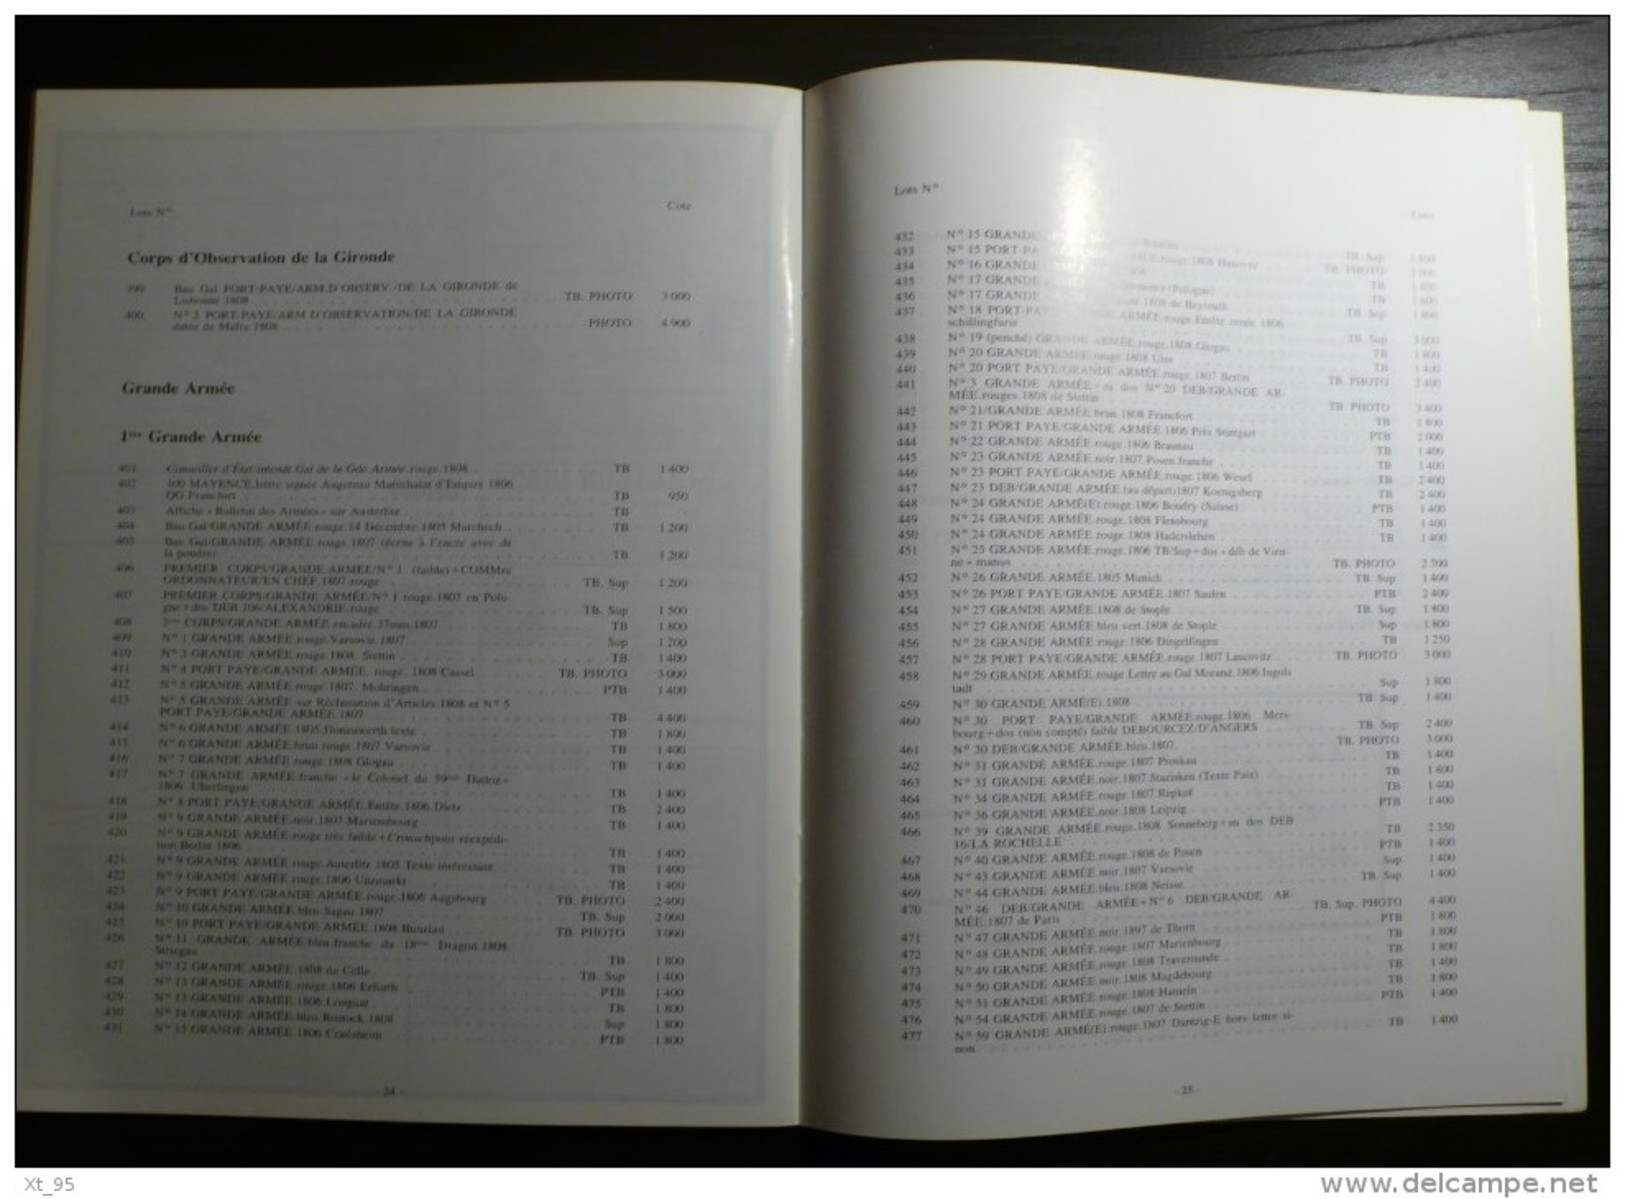 Vente Aux Encheres Collection Dubus - 1988 - 40 Pages - Auktionskataloge